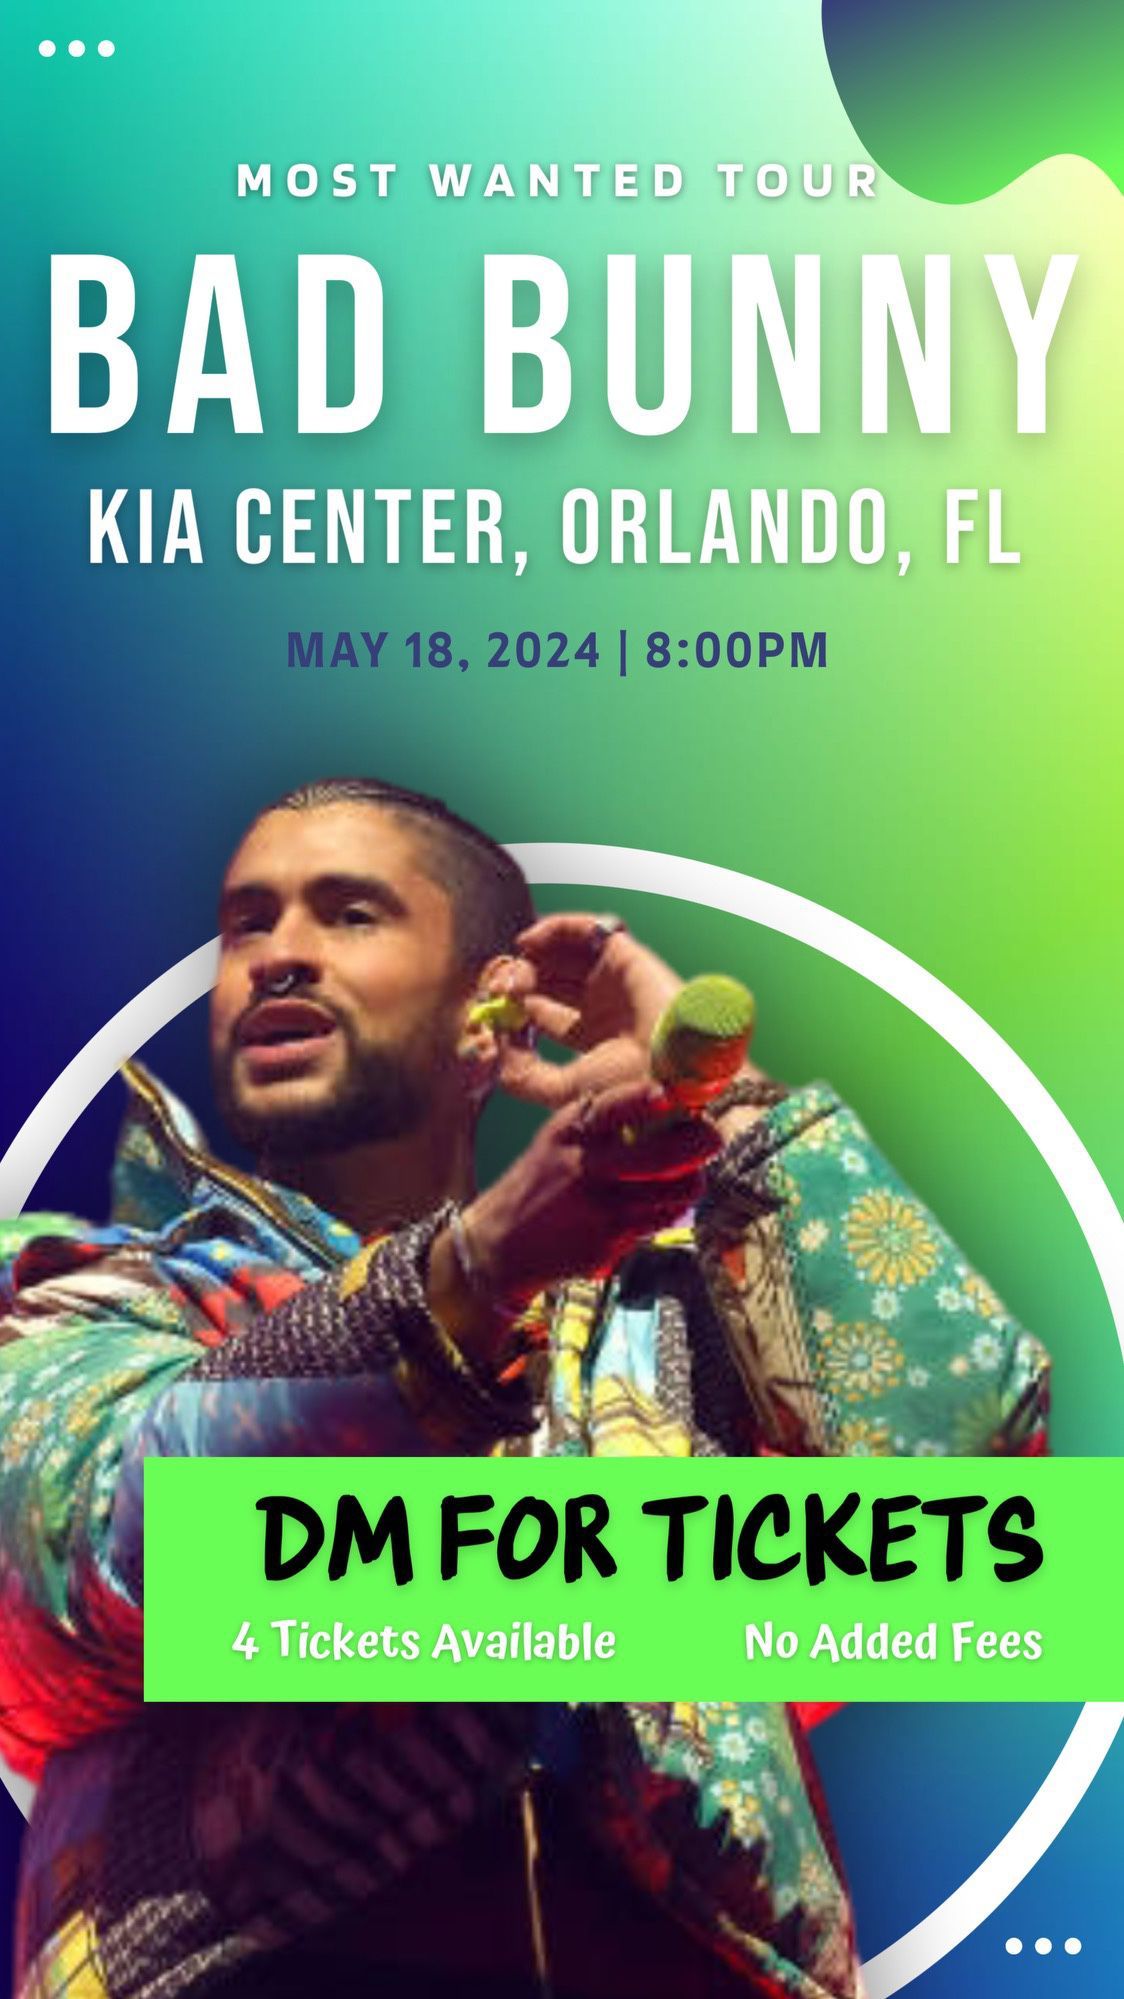 Badbunny @ KIA center Orlando MAY 18 2024